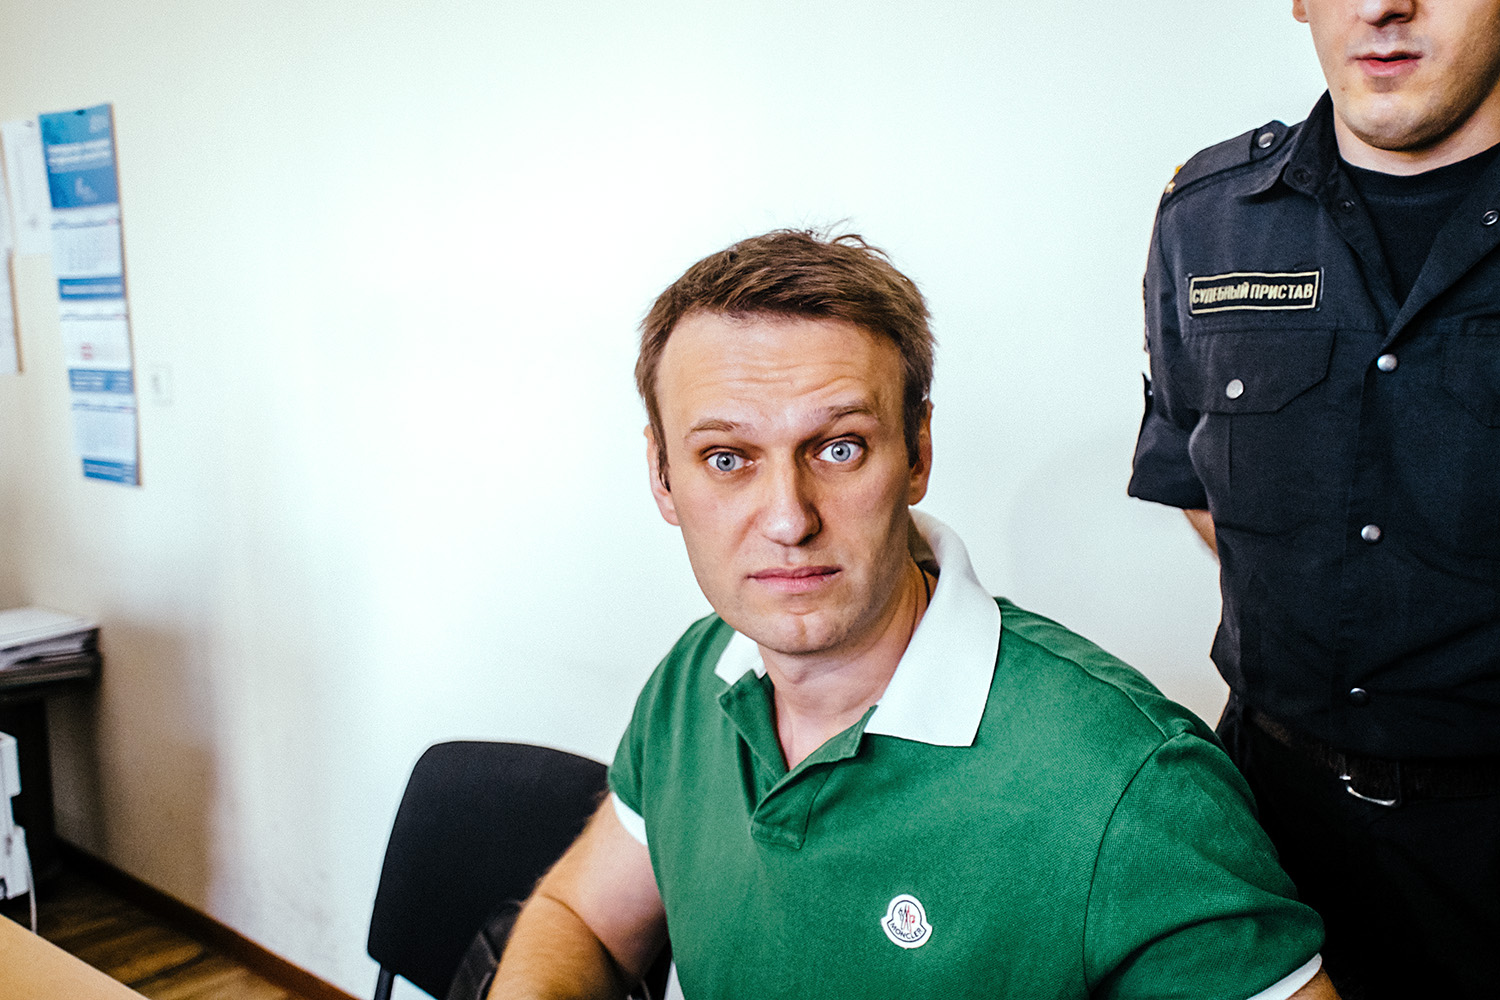 Навальный метит в президенты. Грядущее огорчение или многоходовка?